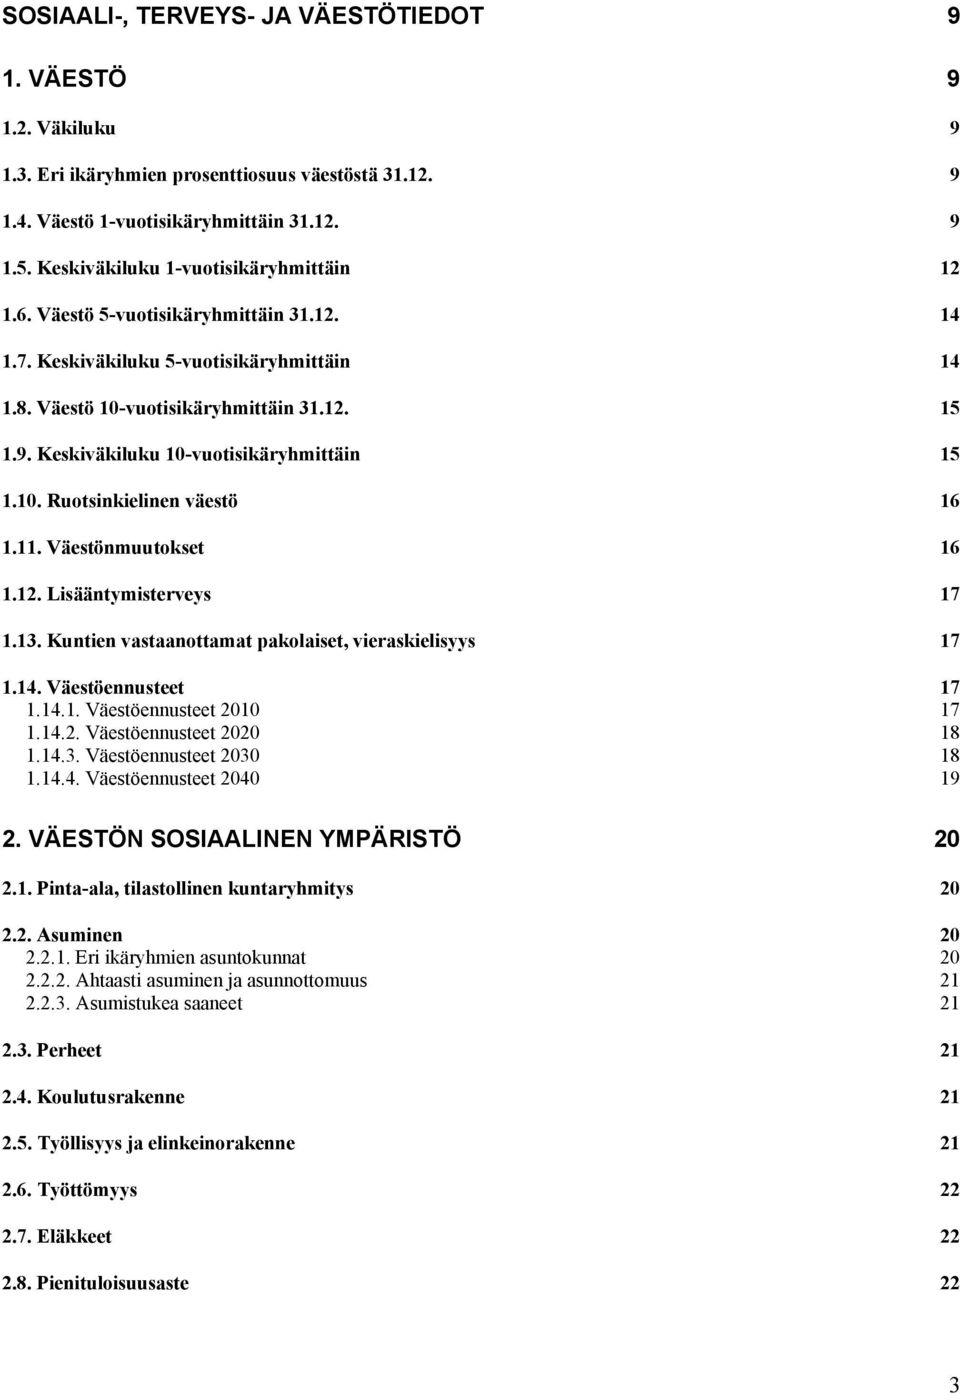 Keskiväkiluku 10-vuotisikäryhmittäin 15 1.10. Ruotsinkielinen väestö 16 1.11. Väestönmuutokset 16 1.12. Lisääntymisterveys 17 1.13. Kuntien vastaanottamat pakolaiset, vieraskielisyys 17 1.14.